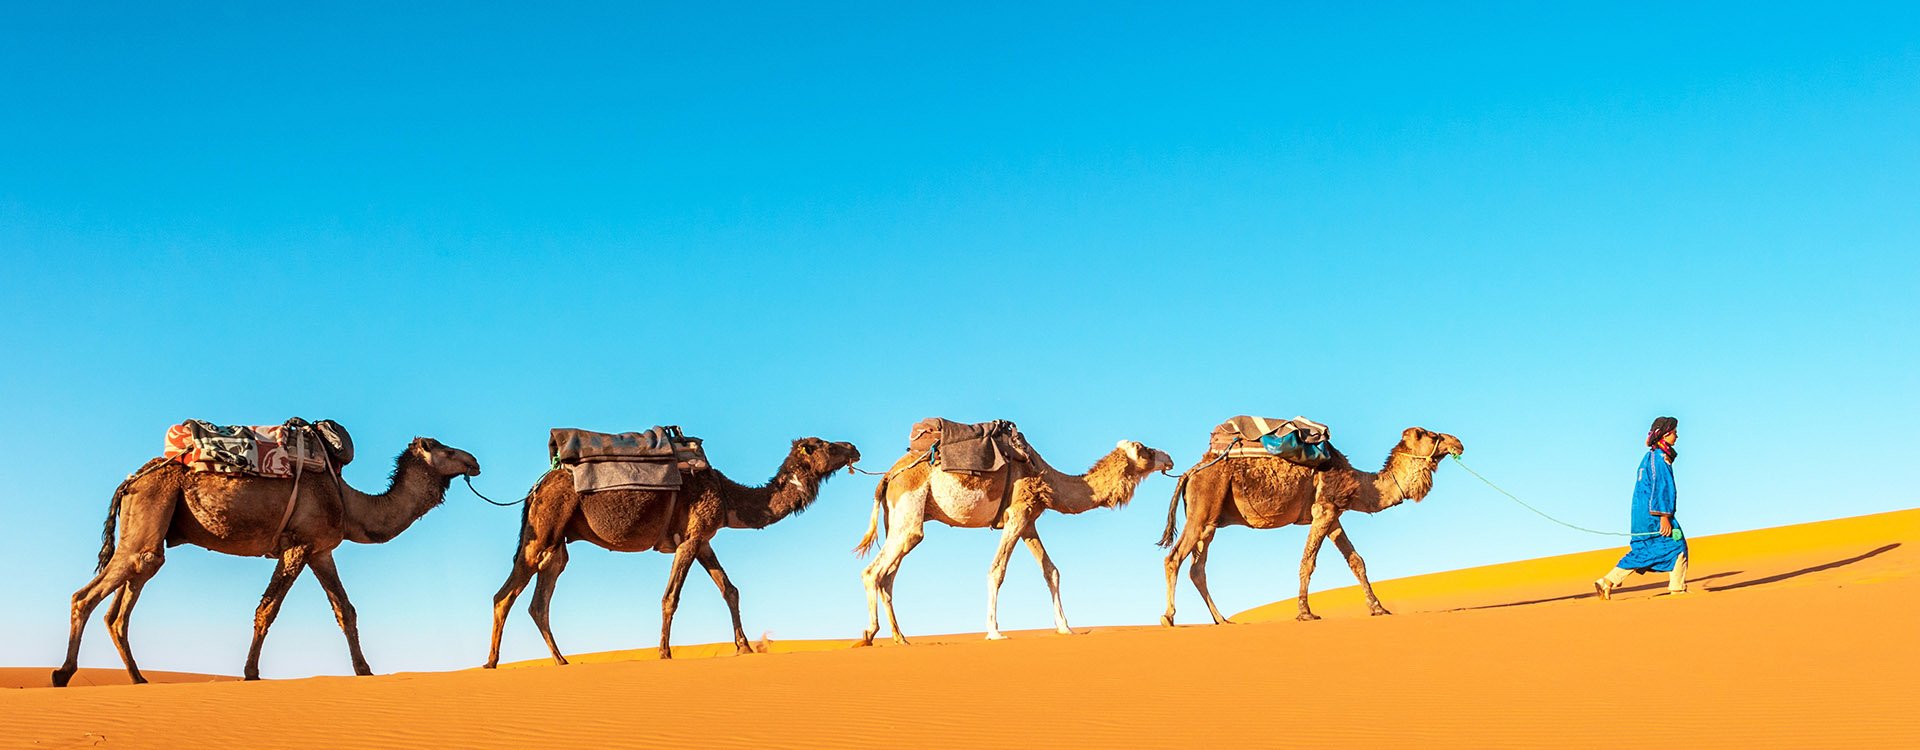 Camel Safari in Morocco